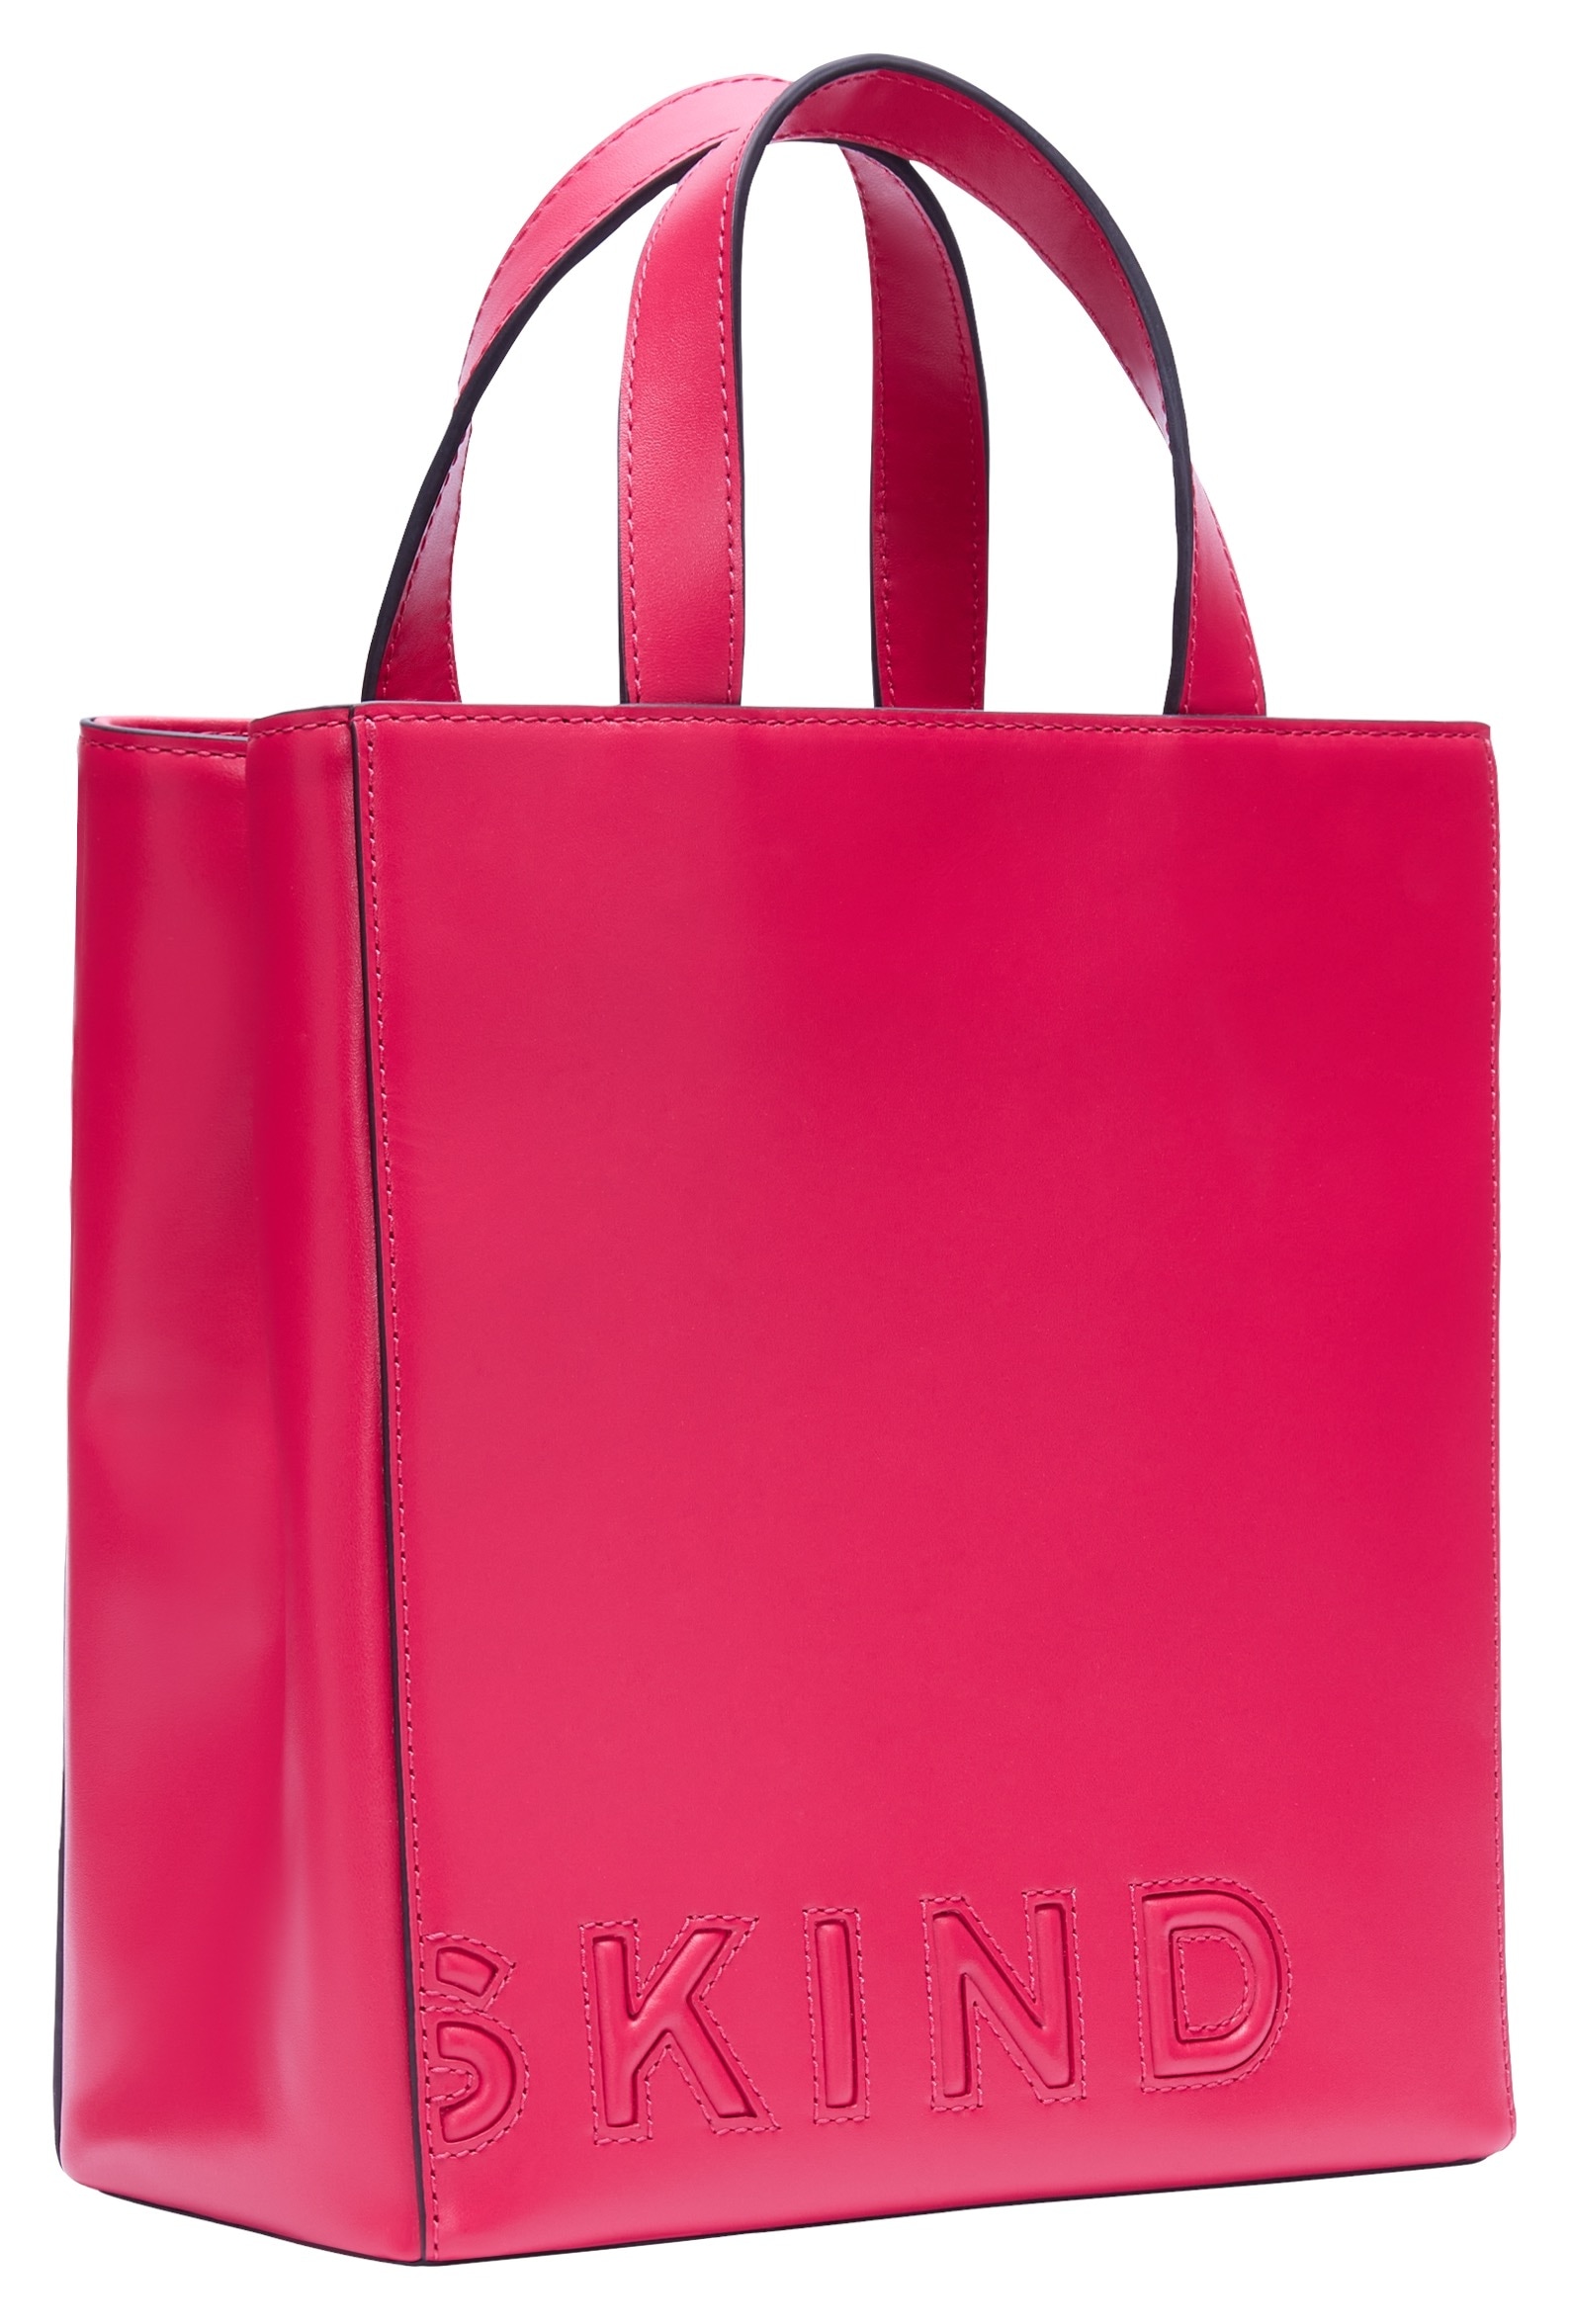 Liebeskind Berlin Shopper »Paperbag S PAPER BAG LOGO CARTER«, Handtasche, grosse Handtasche, Zertifiziert nach LWG